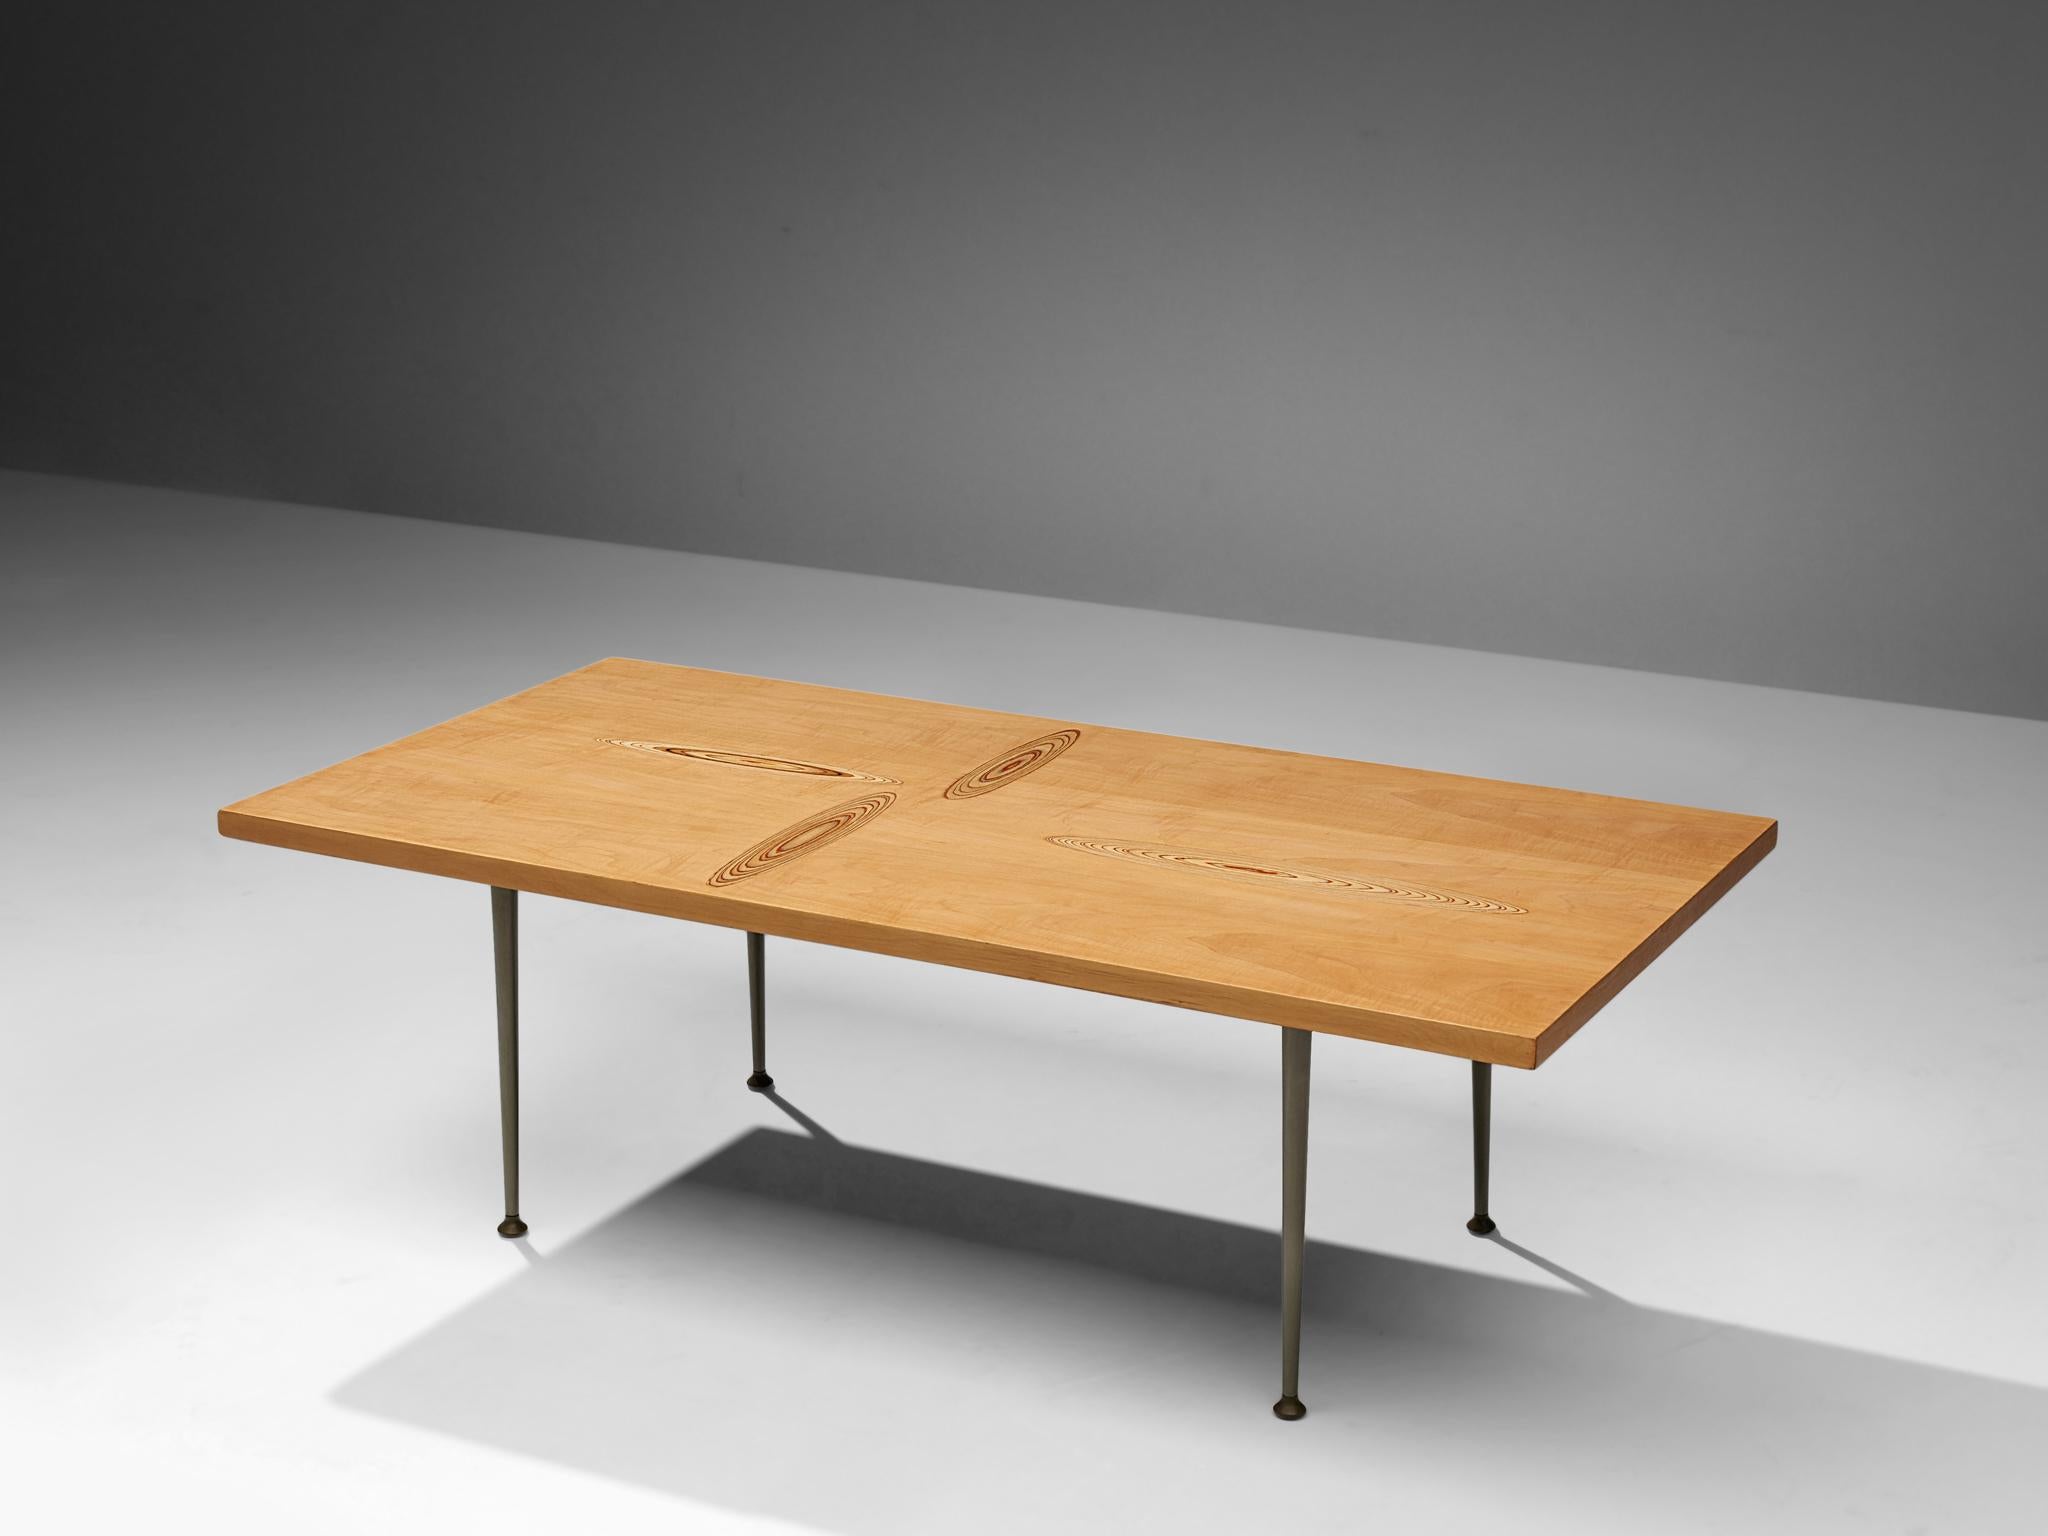 Tapio Wirkkala pour Asko, table basse, bouleau, métal, Finlande, années 1960.

Table basse avec motifs en marqueterie de bois, conçue par Tapio Wirkkala. La table est produite par Asko. Cette table basse est l'un des meubles emblématiques de